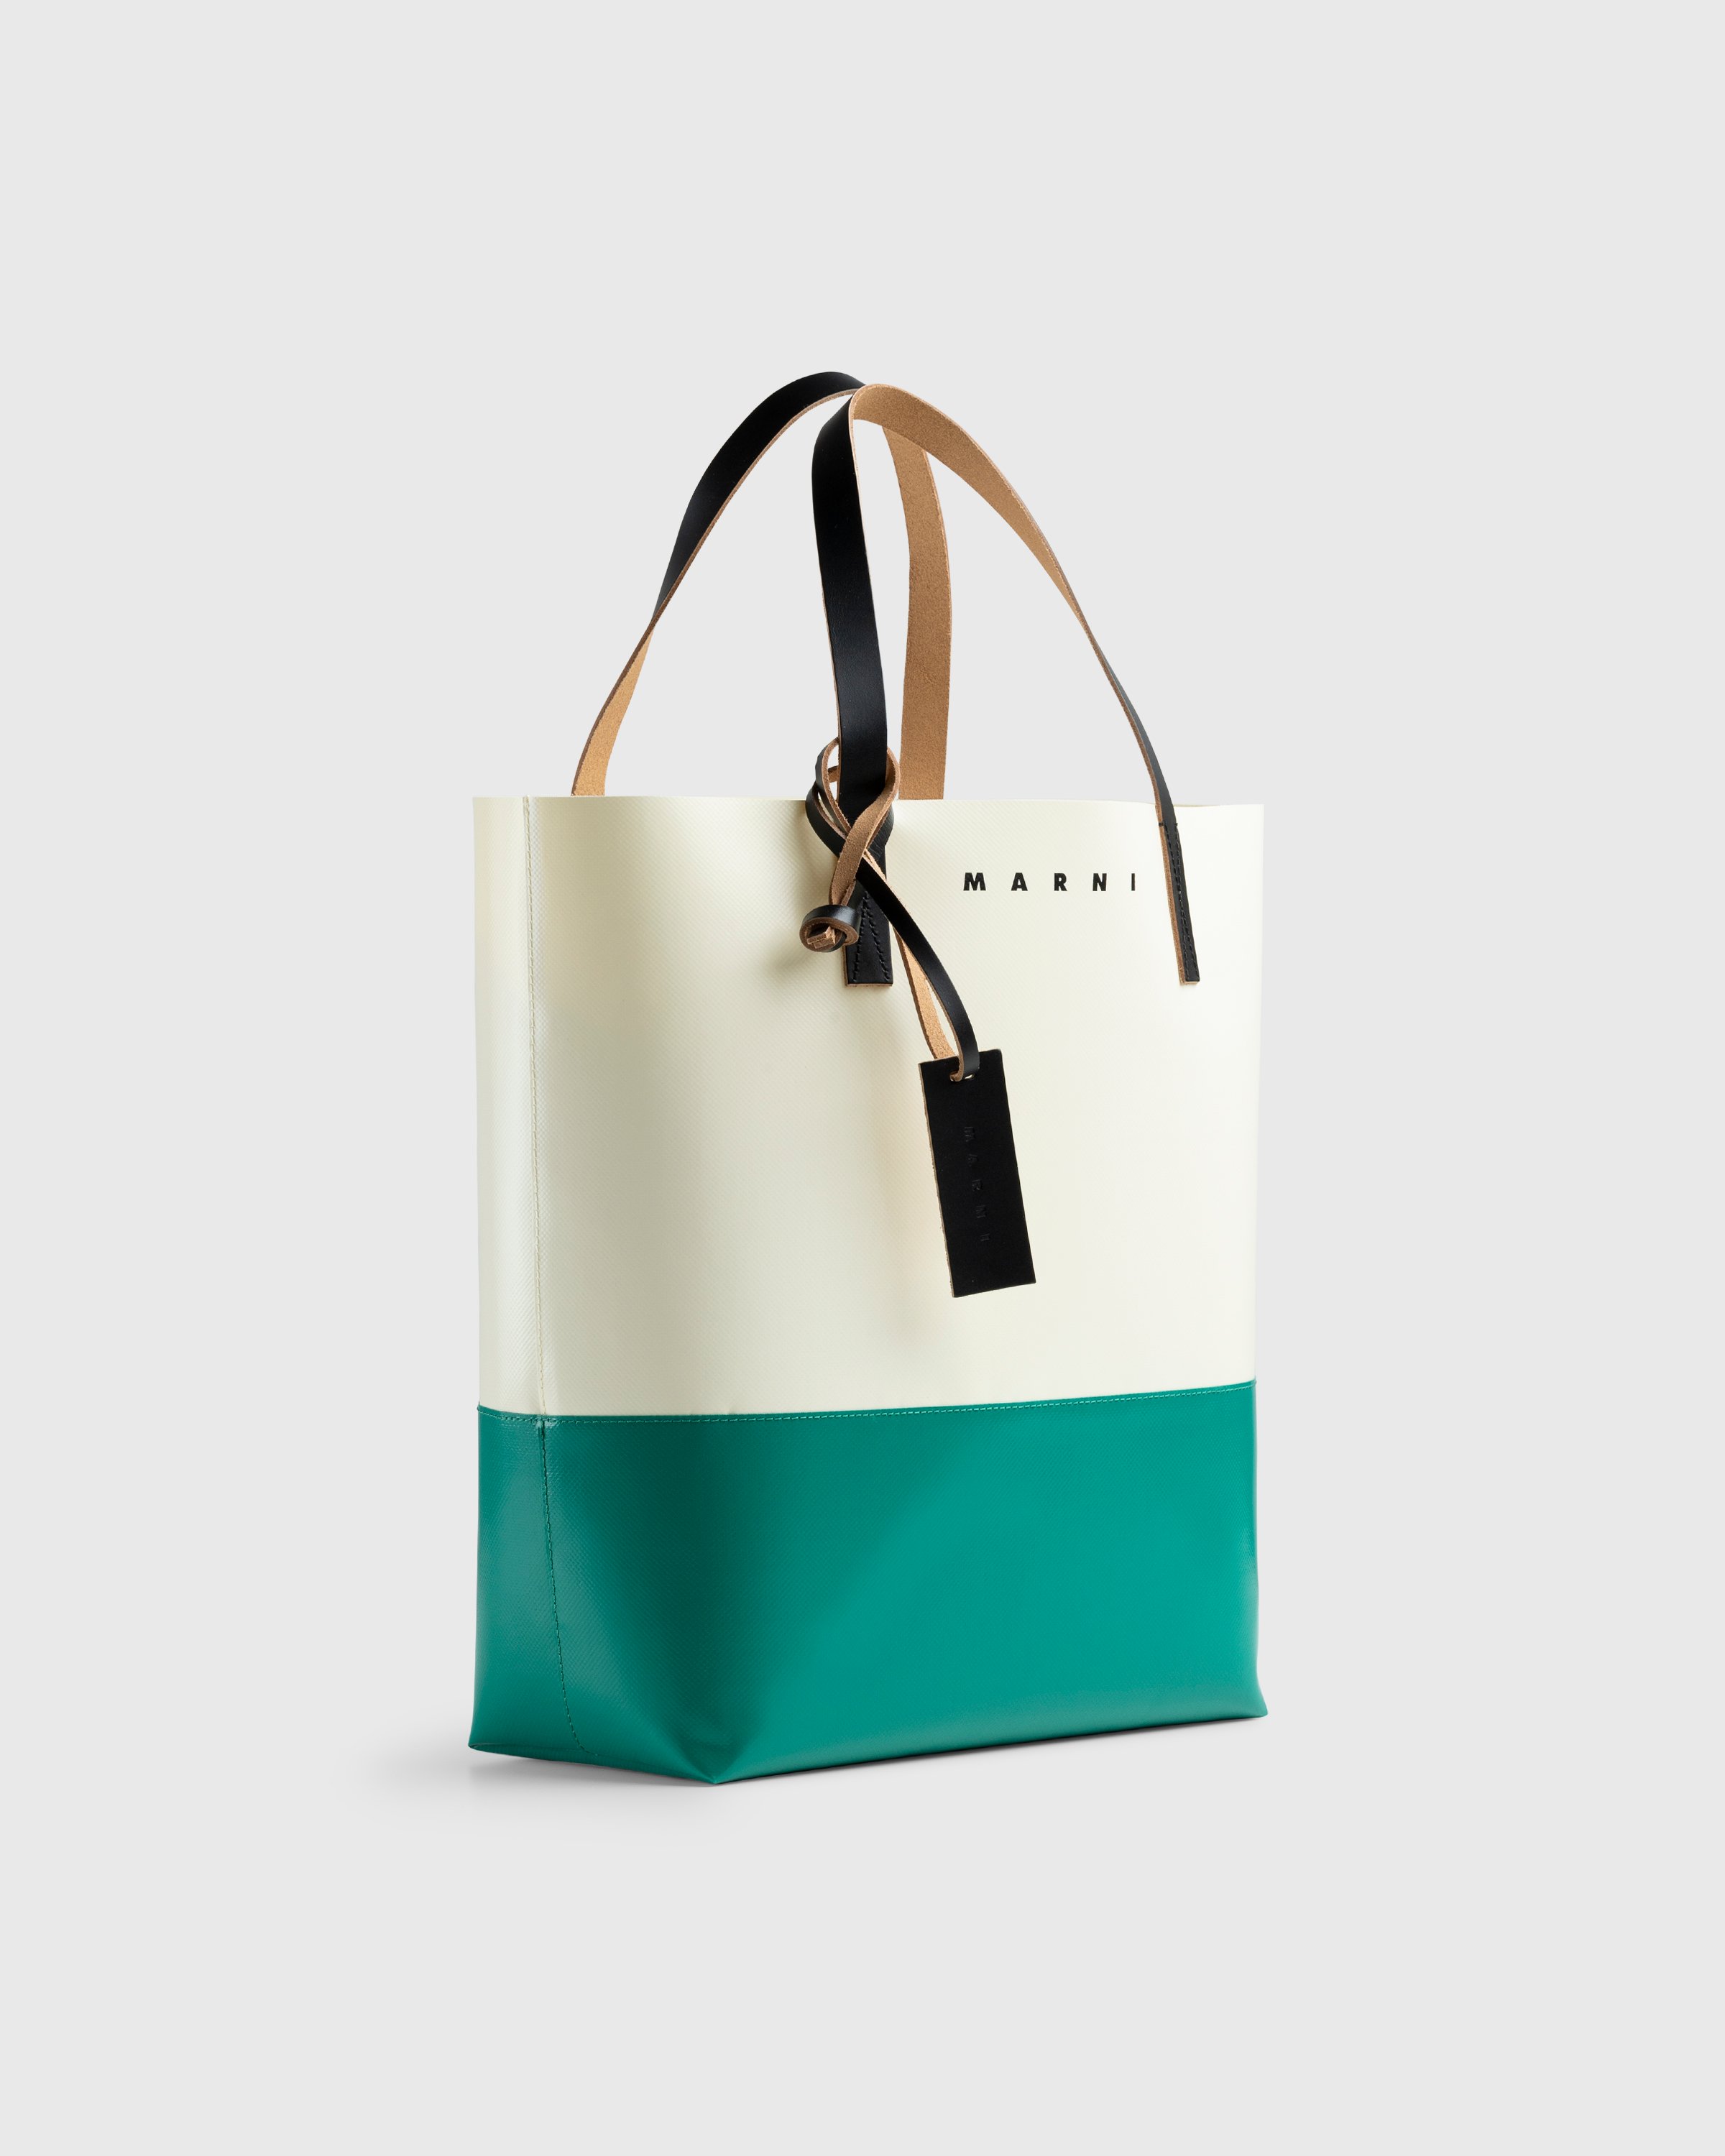 Marni - Tribeca Two-Tone Tote Bag White/Green - Accessories - Multi - Image 3